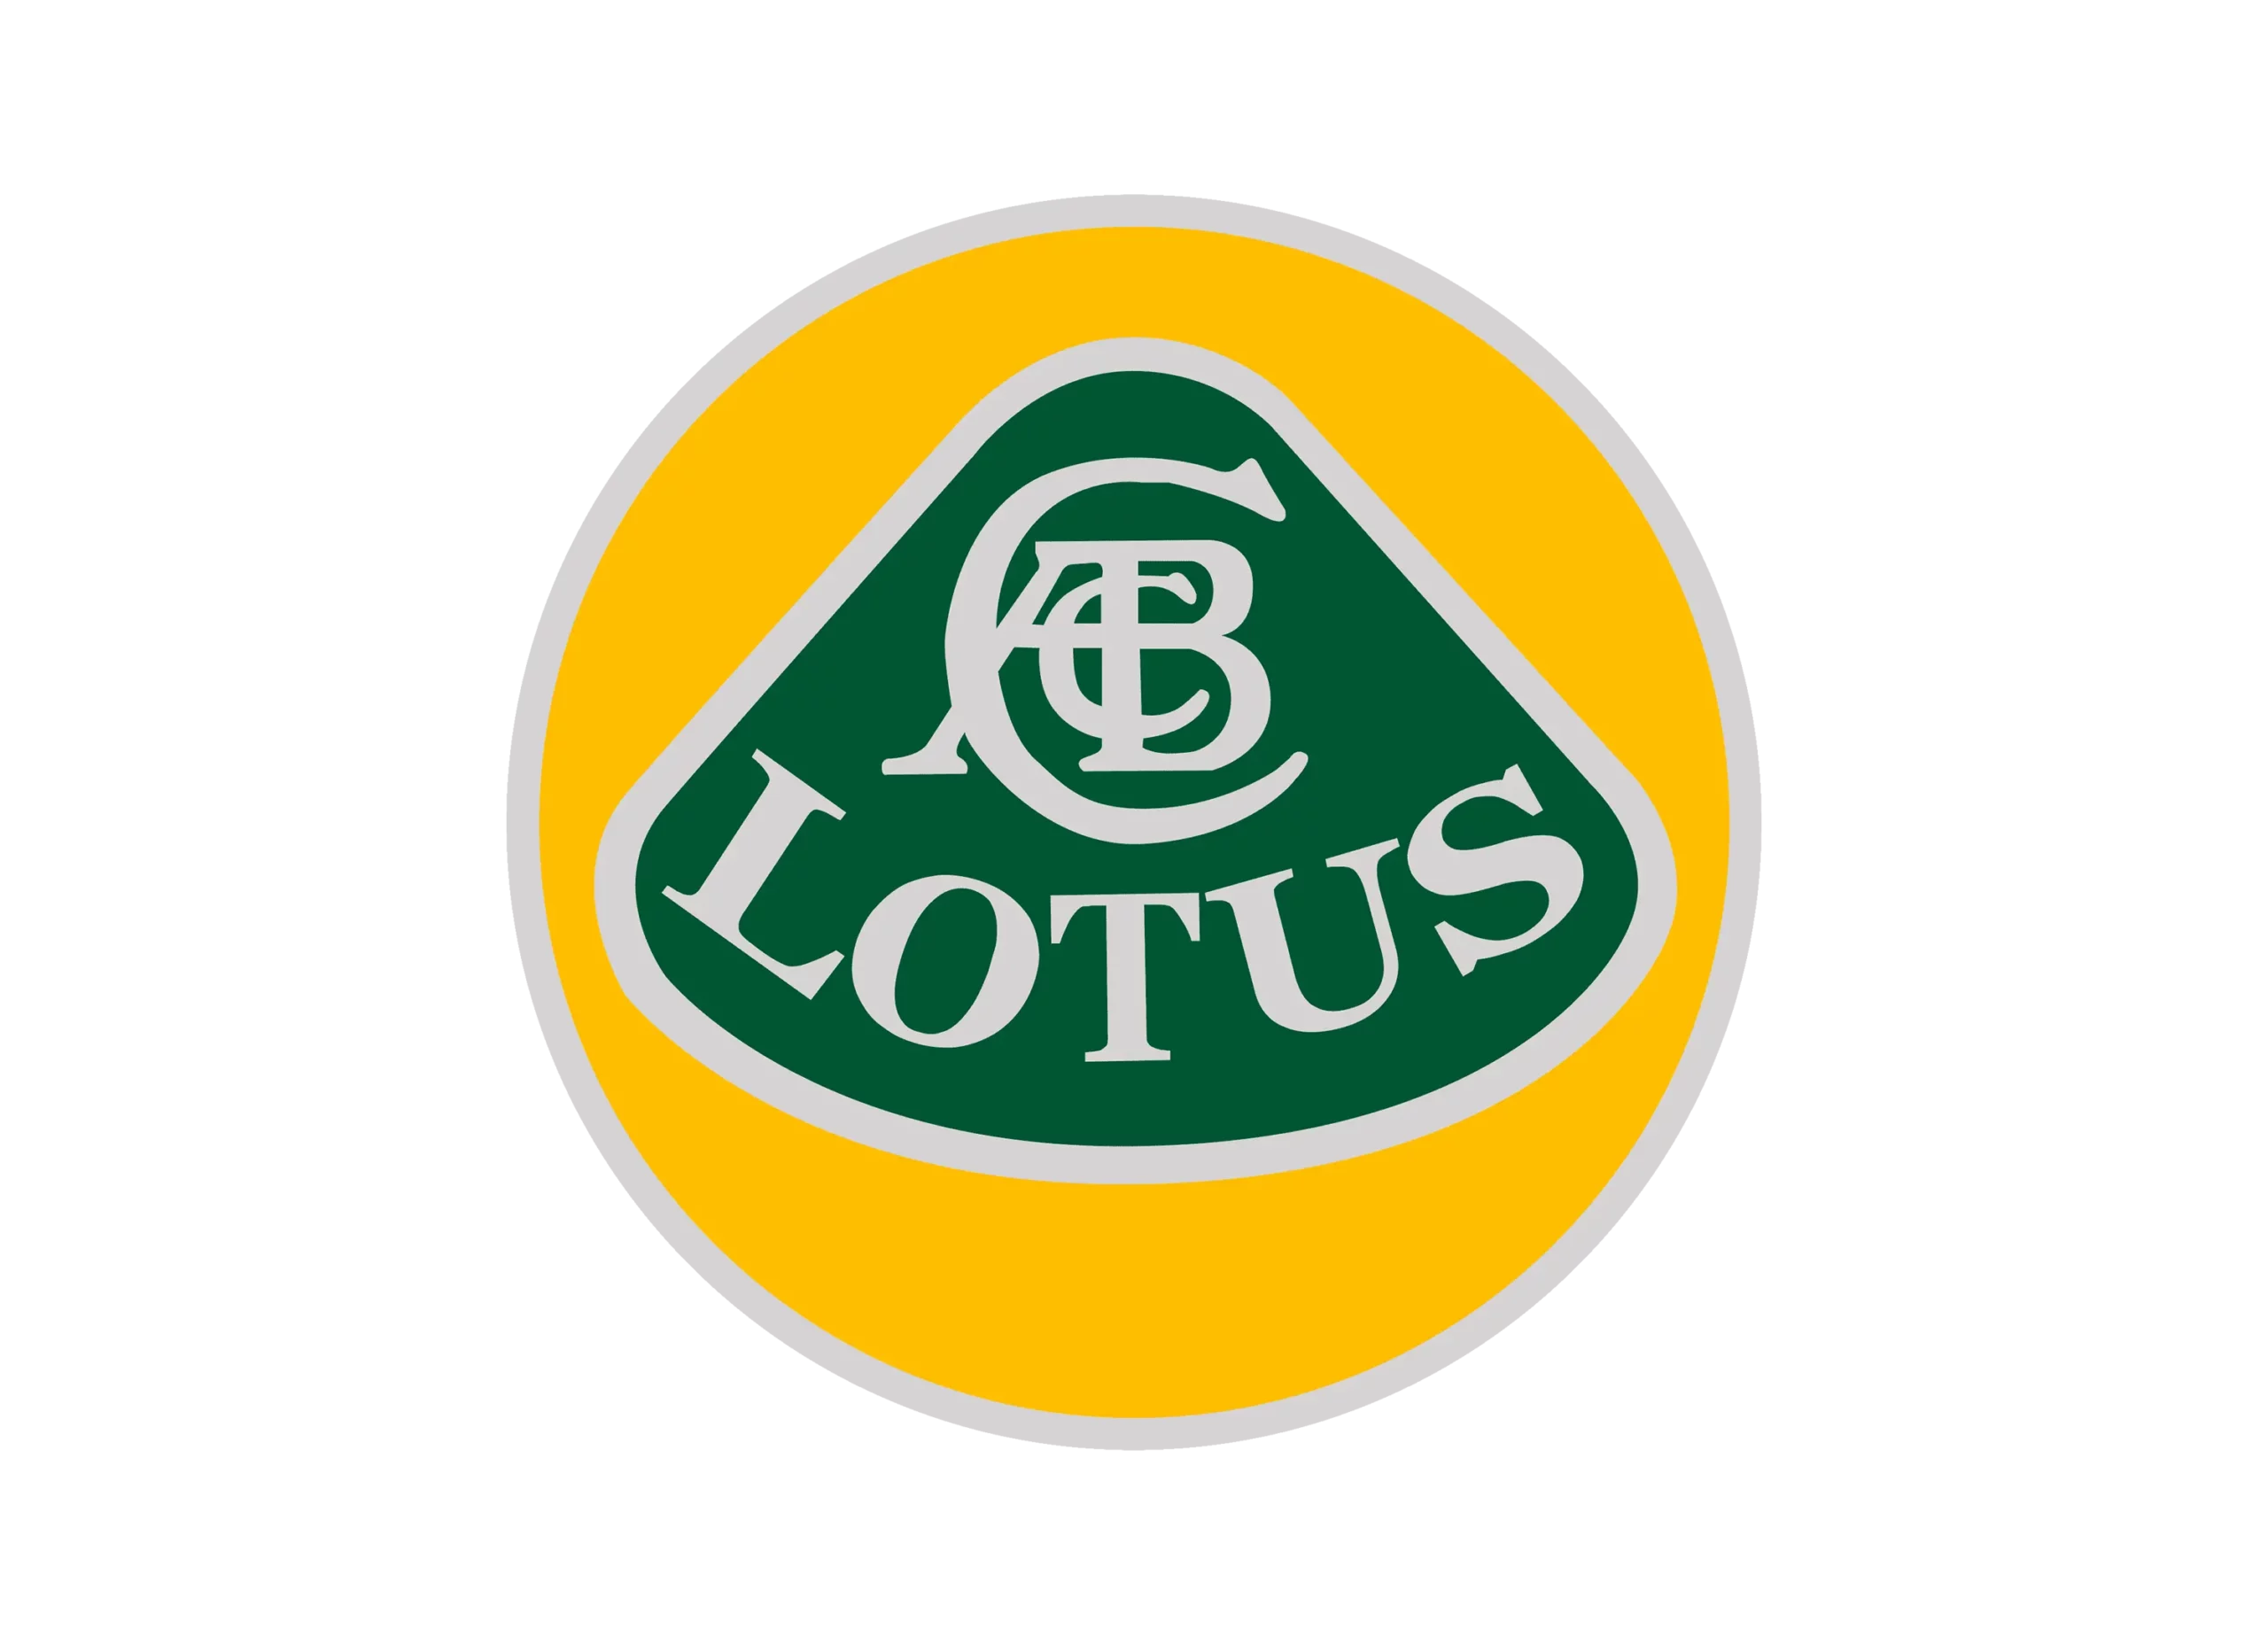 Lotus logo 1989-2010